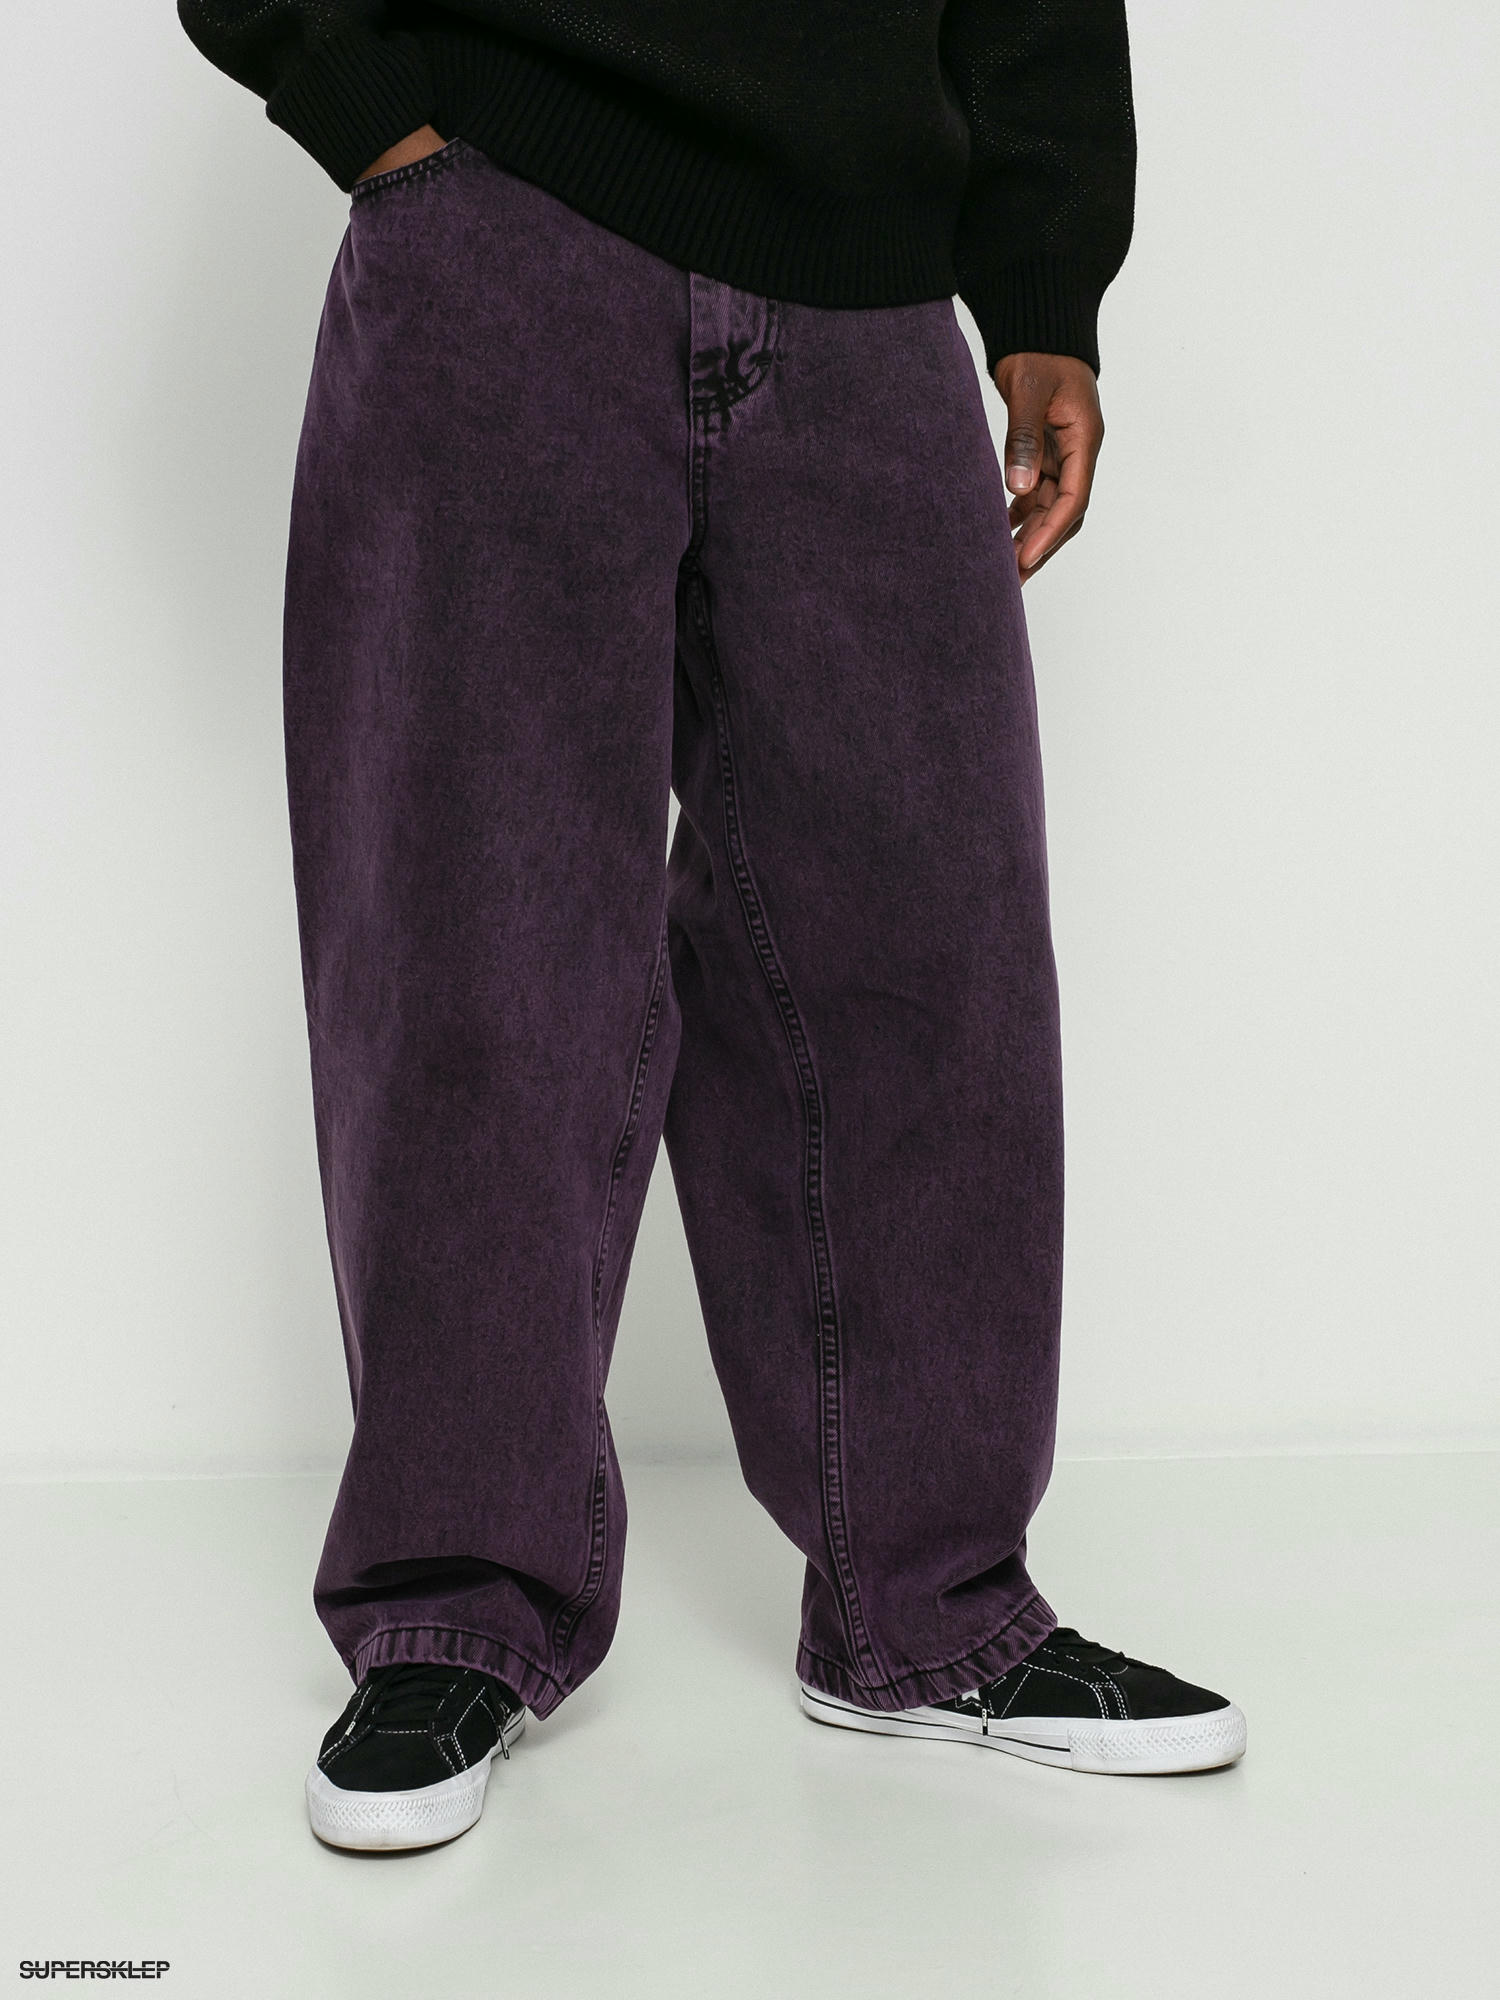 カットオフしてますpolar big boy jeans purple black S